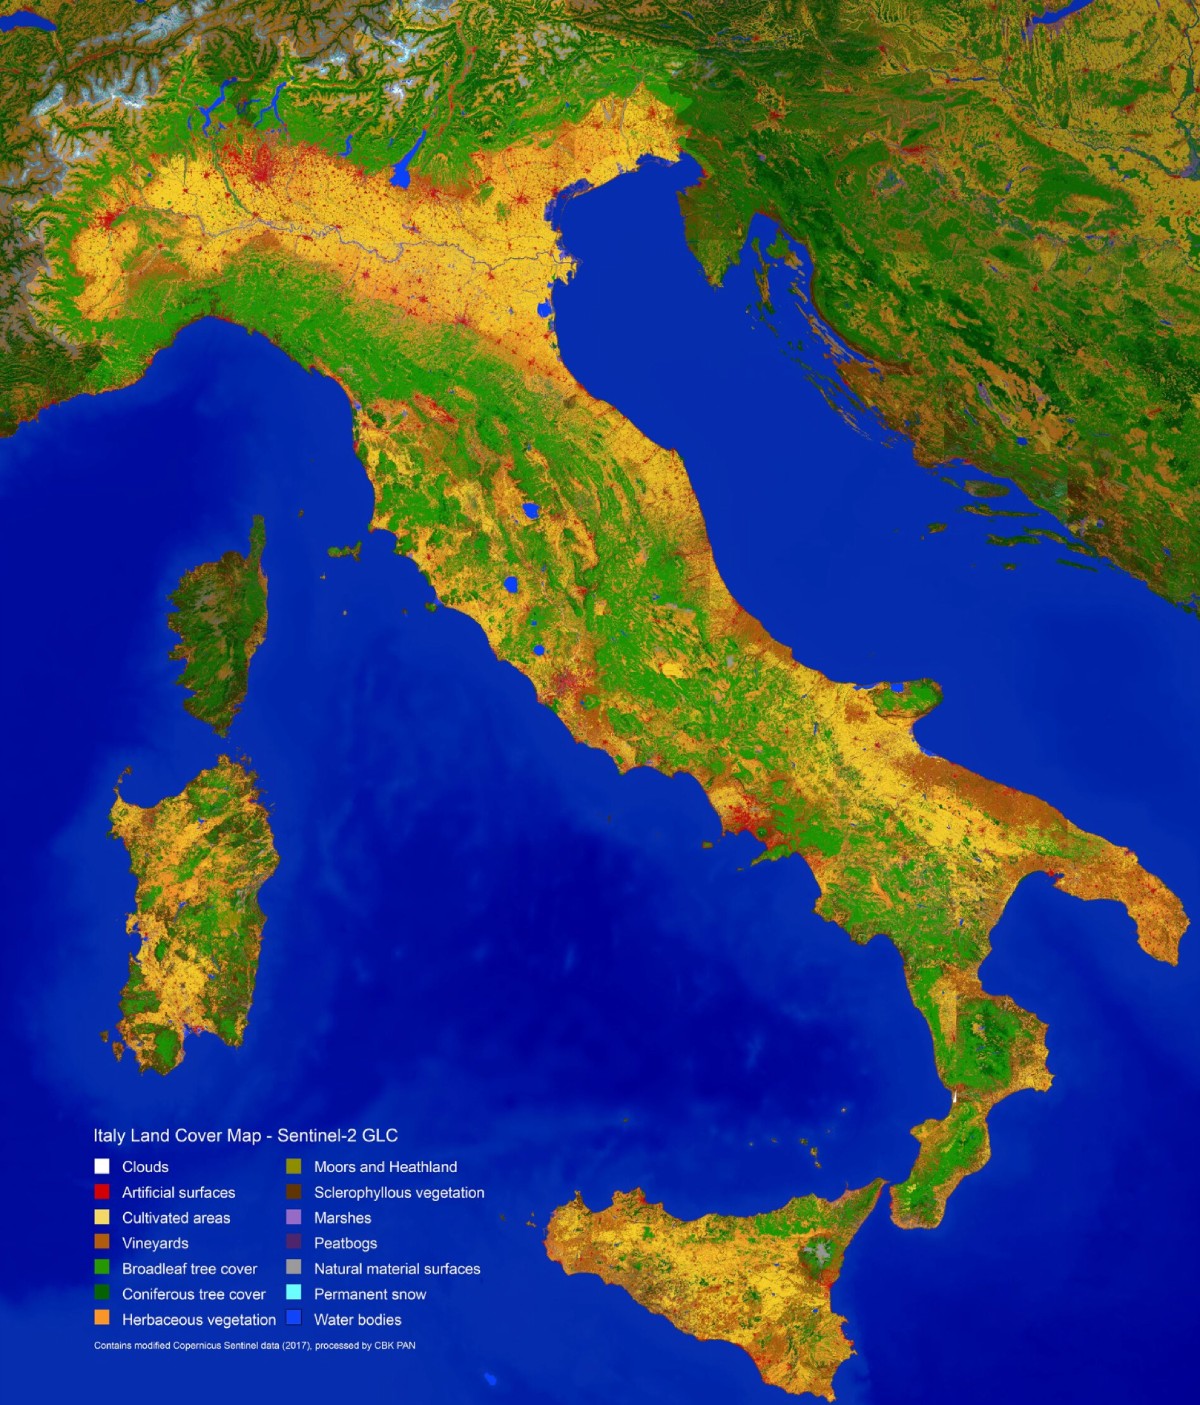 Una mappa della copertura vegetale dell'Italia ottenuta tramite dati satellitari